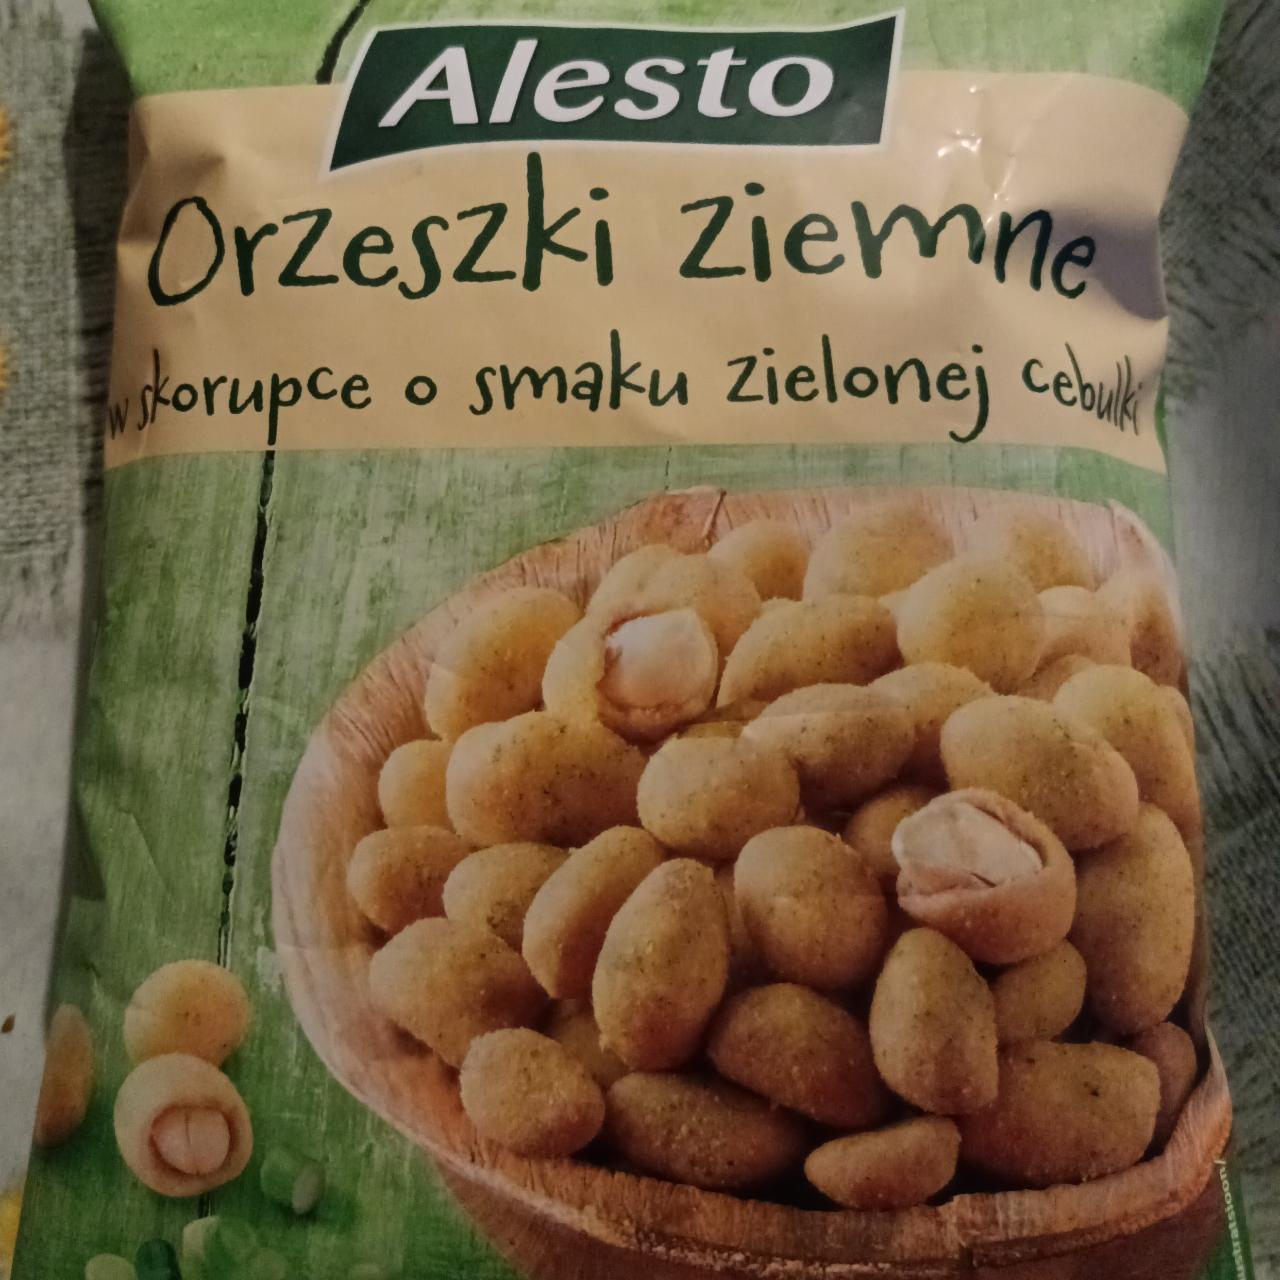 Fotografie - Orzeszki ziemne o smaku zielonej cebulki Alesto